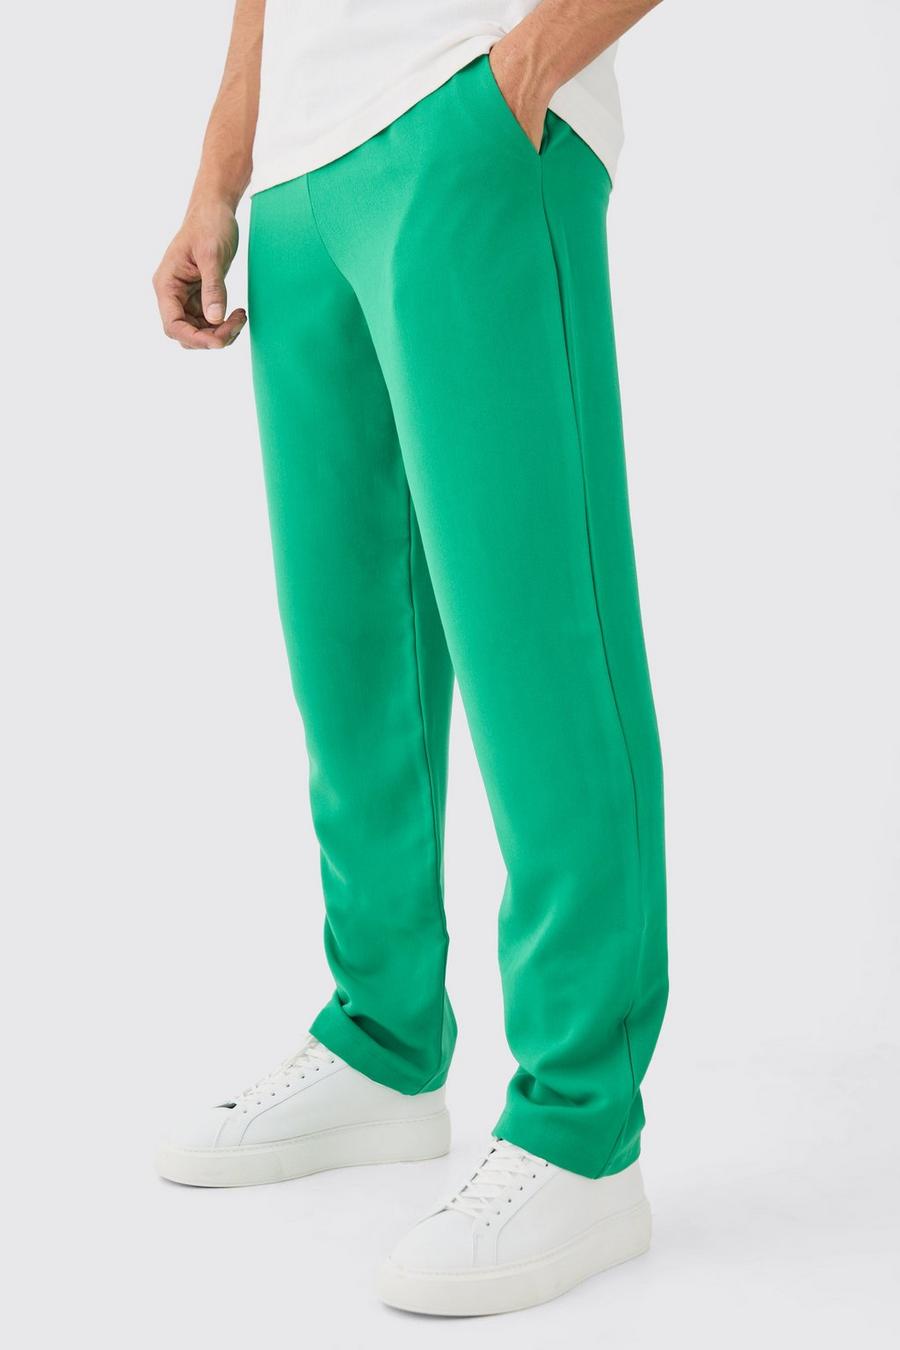 Pantaloni dritti con laccetti in vita, Emerald